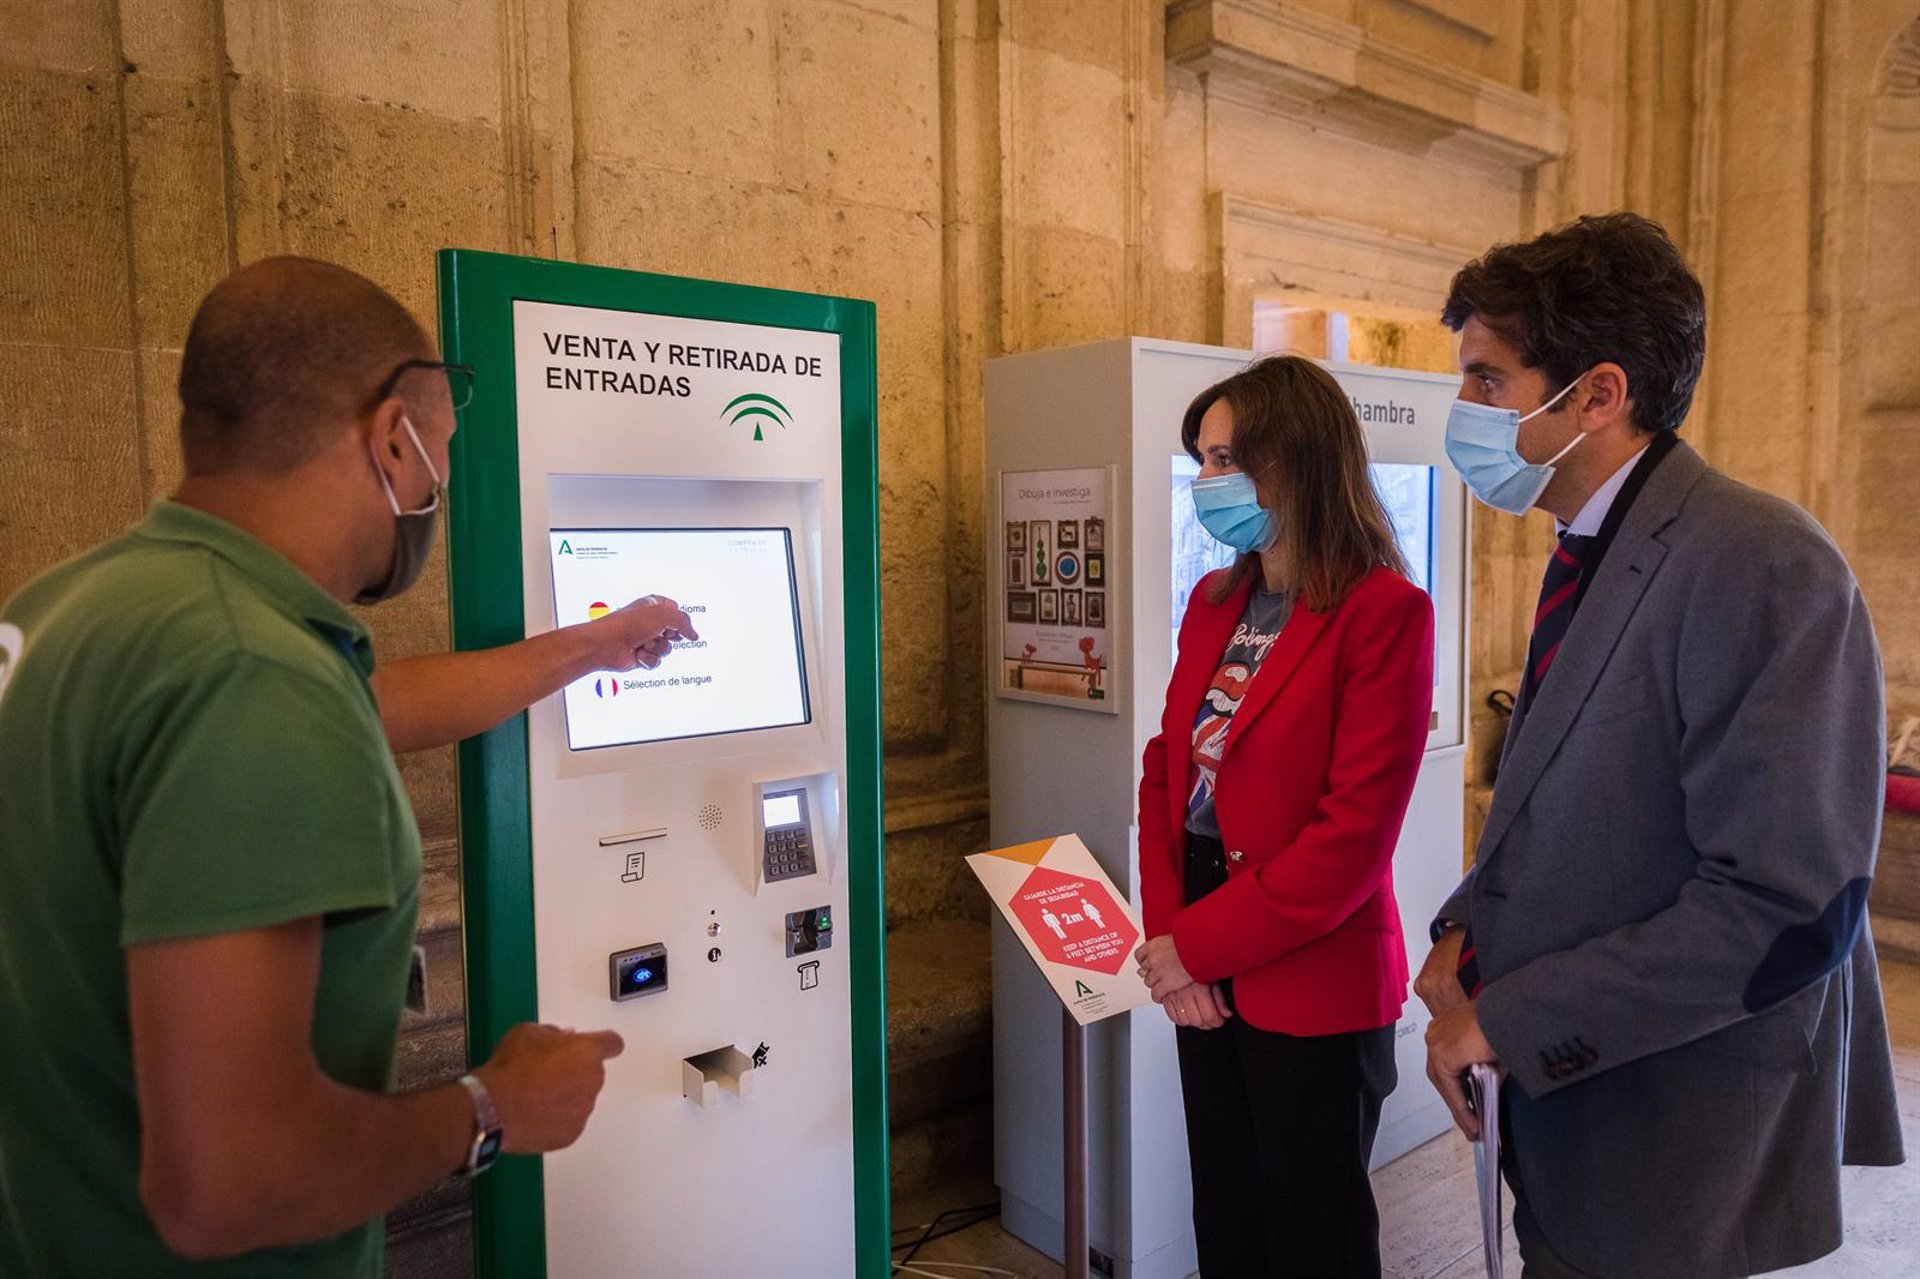 La Alhambra instala una máquina expendedora de entradas en el Palacio de Carlos V